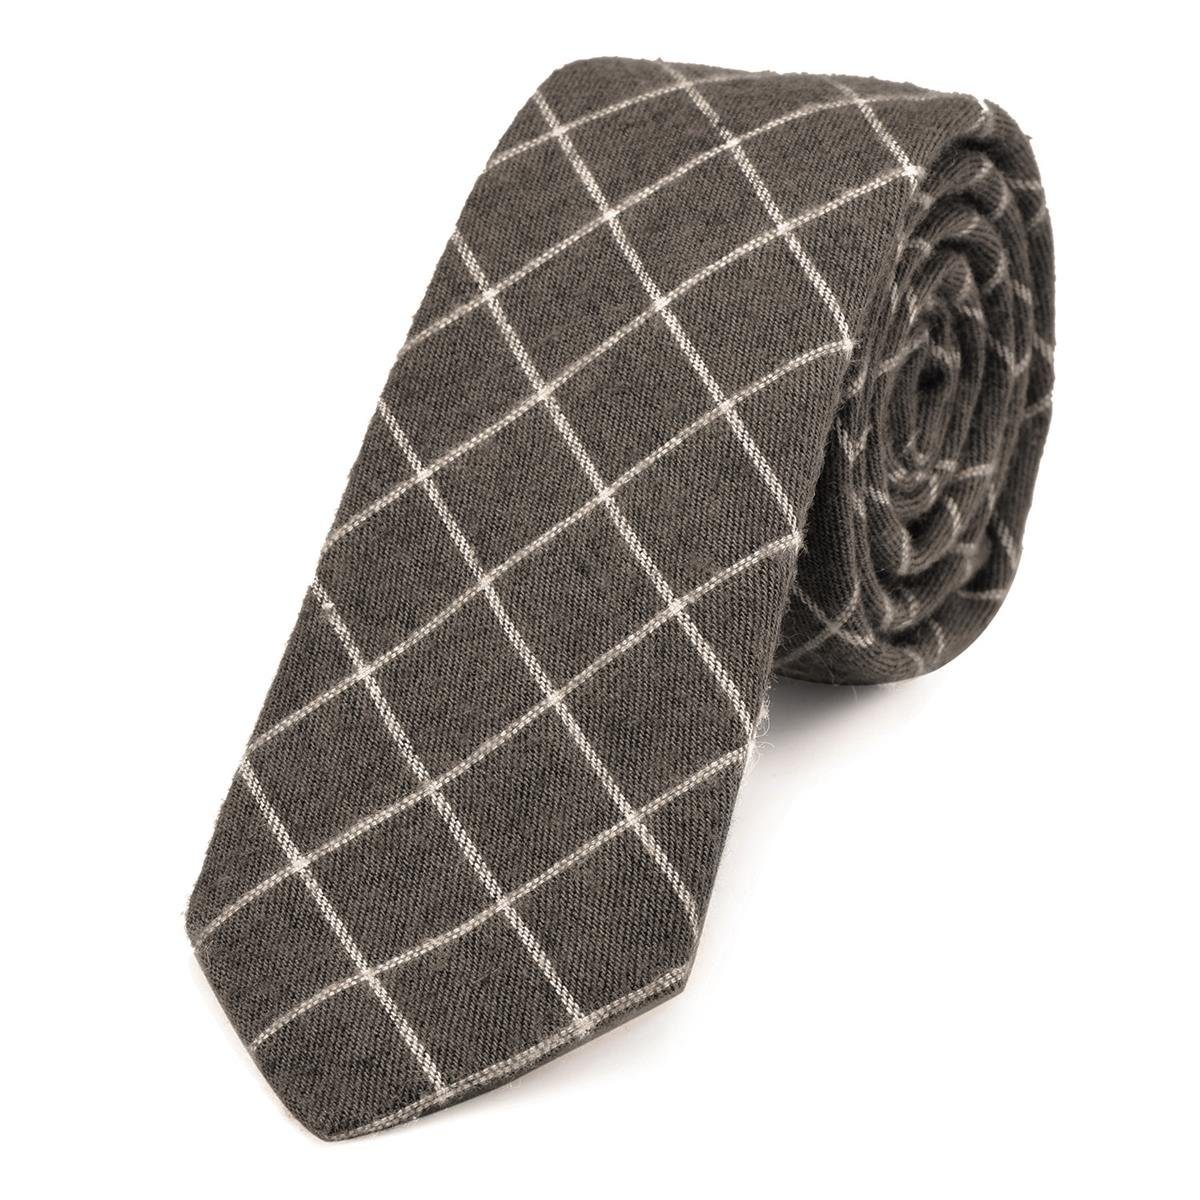 DonDon Krawatte Herren Krawatte 6 cm mit Karos oder Streifen (Packung, 1-St., 1x Krawatte) Baumwolle, kariert oder gestreift, für Büro oder festliche Veranstaltungen braun kariert